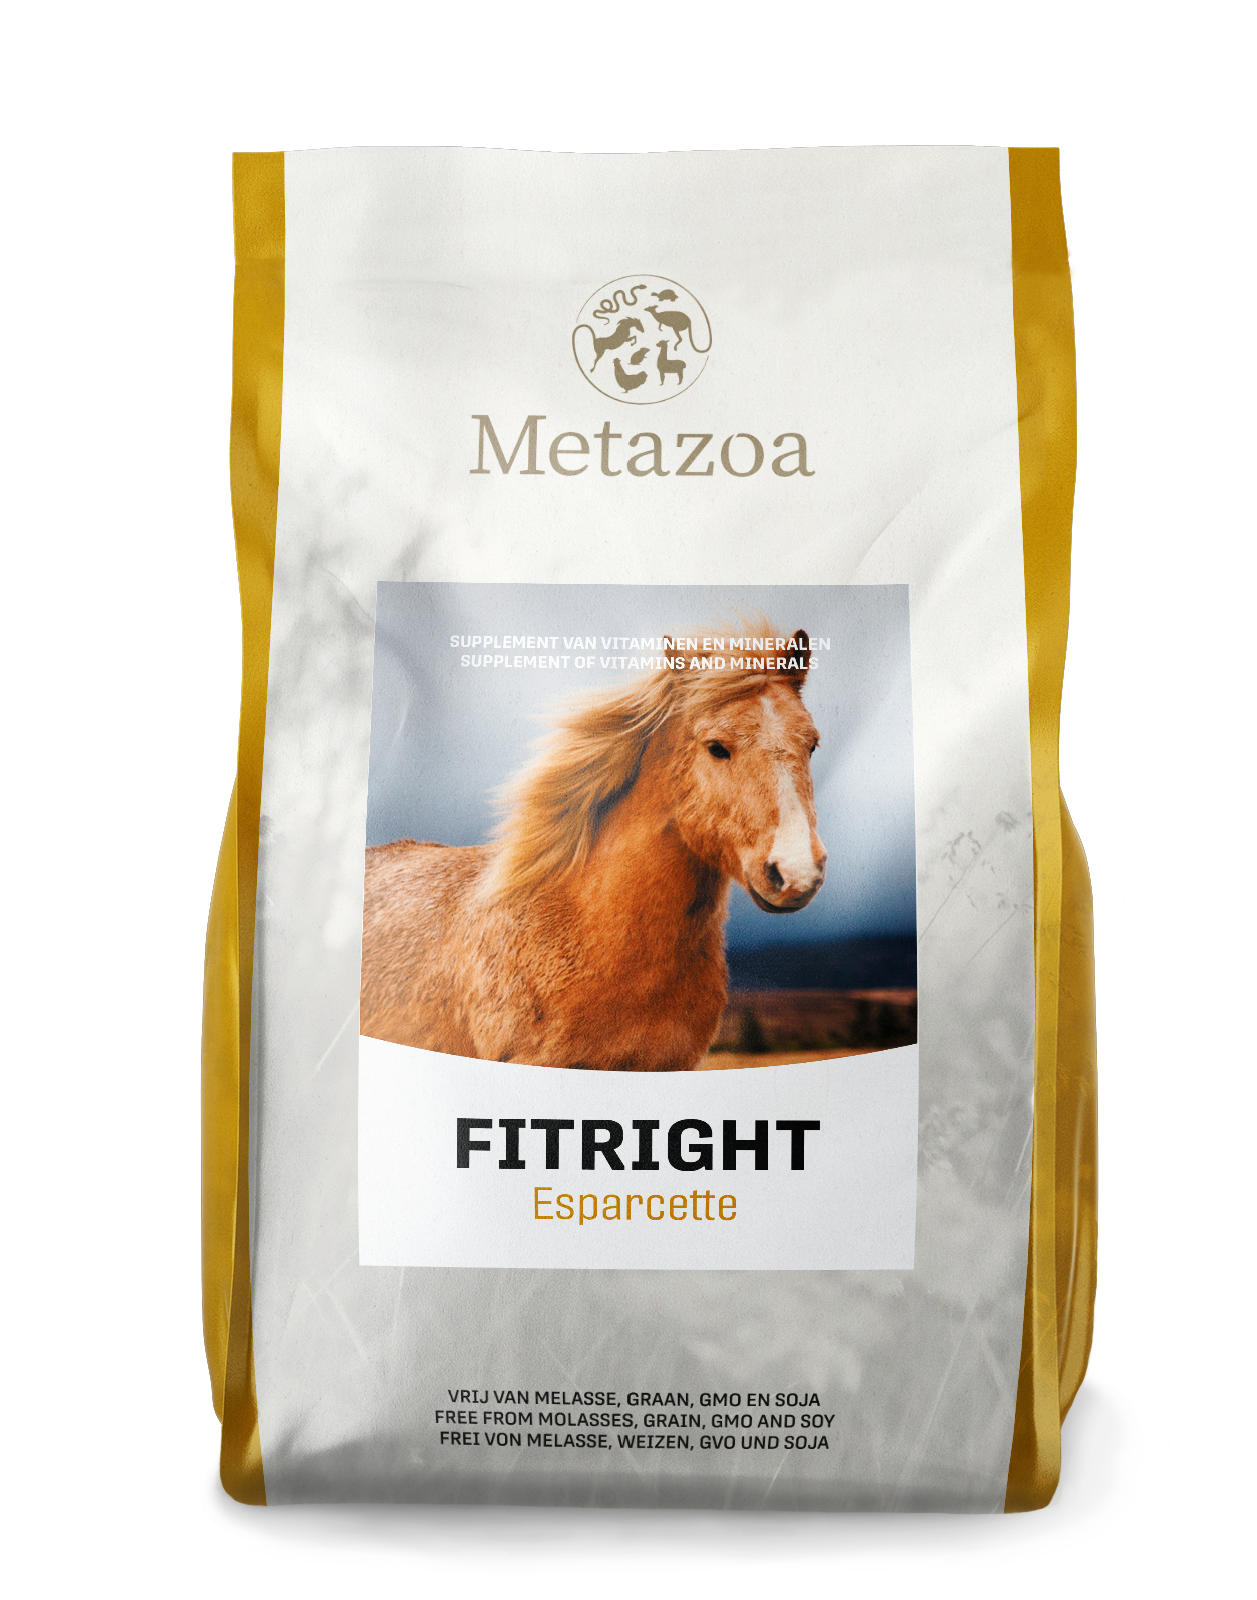 Download Metazoa FitRight esparcette Verpakking 15 kg EAN 4260176355014